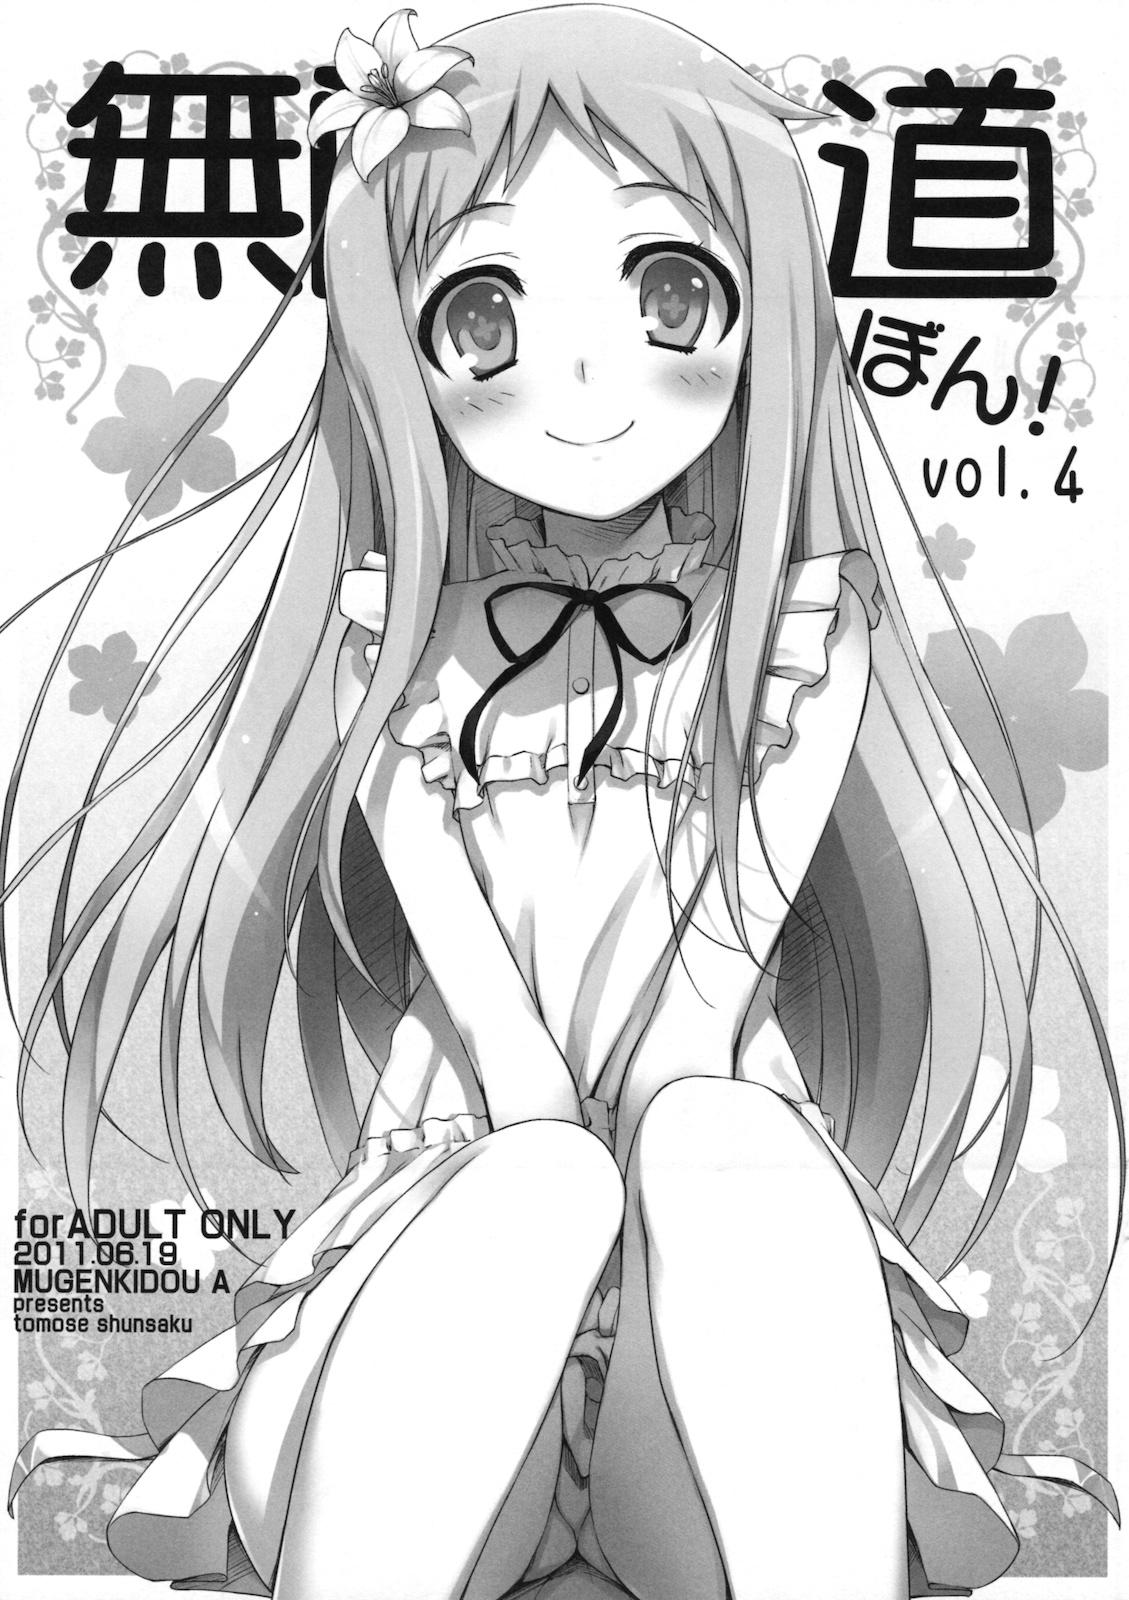 Retro Mugenkidou bon! vol.4 - Ano hi mita hana no namae wo bokutachi wa mada shiranai Web Cam - Picture 1